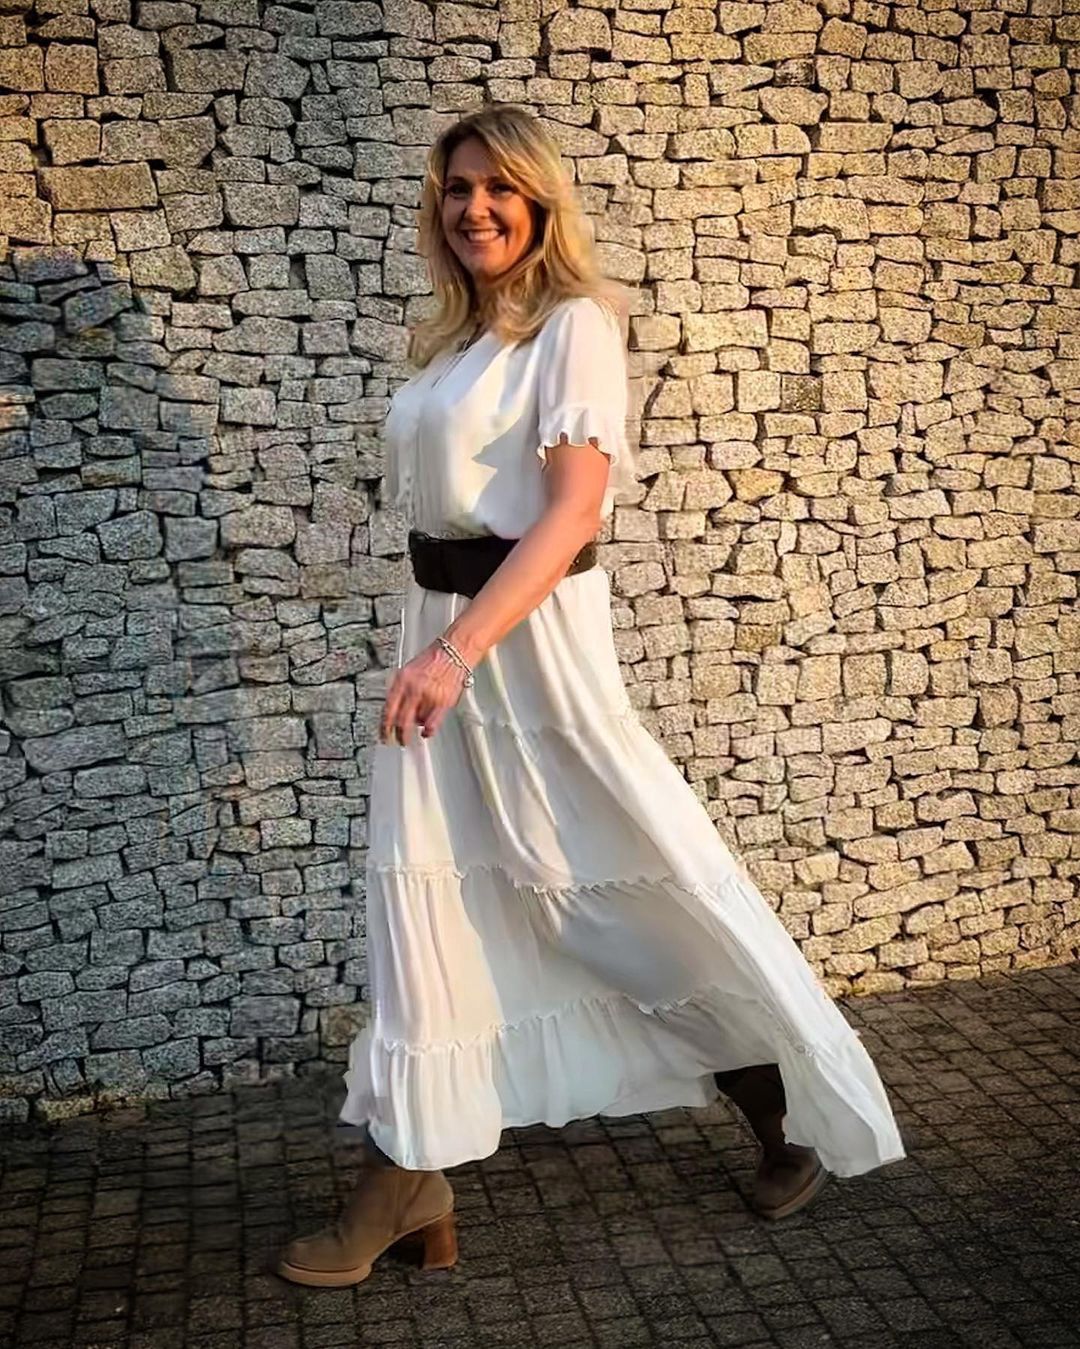 Wachowicz wybrała białą sukienkę, fot. Instagram.com/ewawachowicz